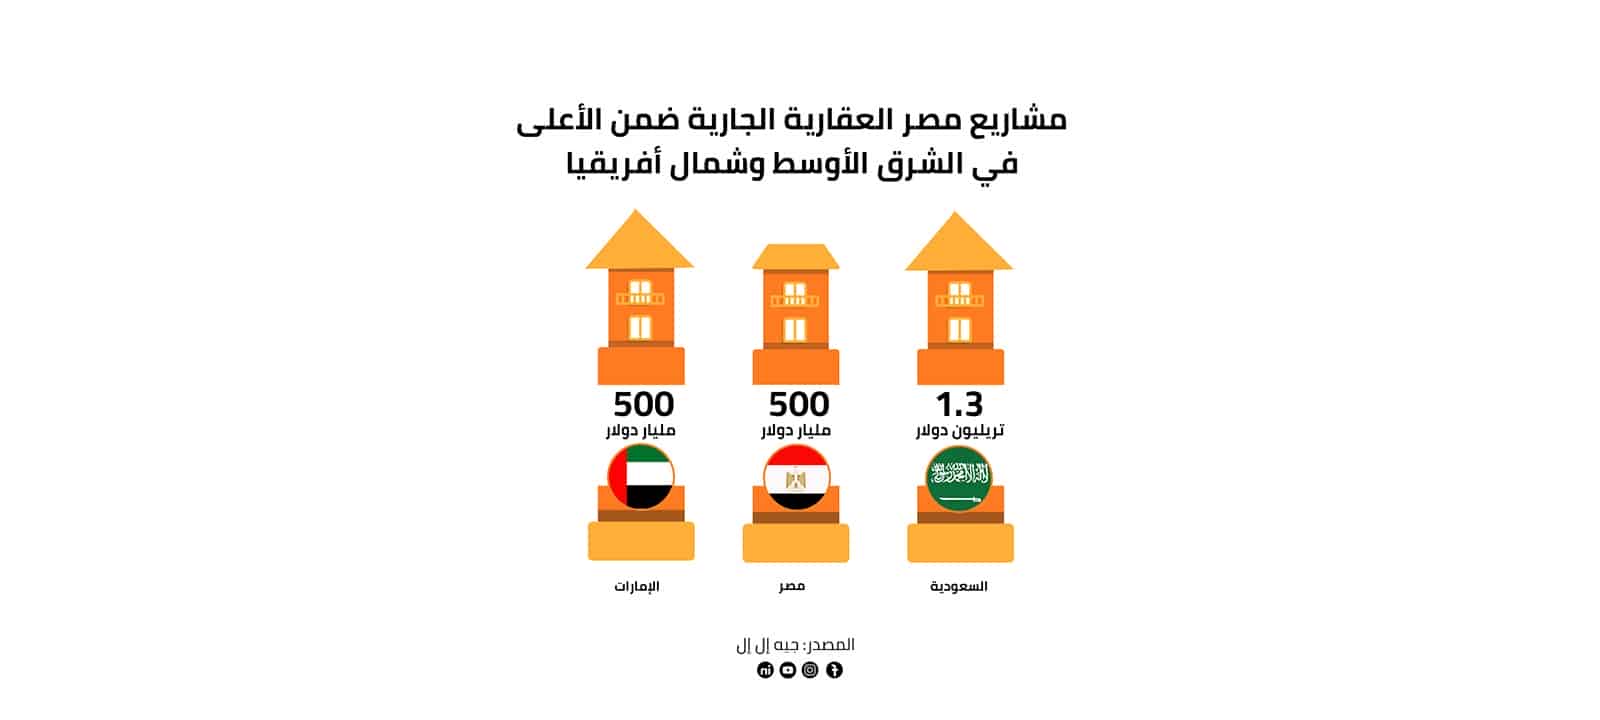 مشاريع مصر العقارية الجارية ضمن الأعلى في الشرق الأوسط وشمال أفريقيا 